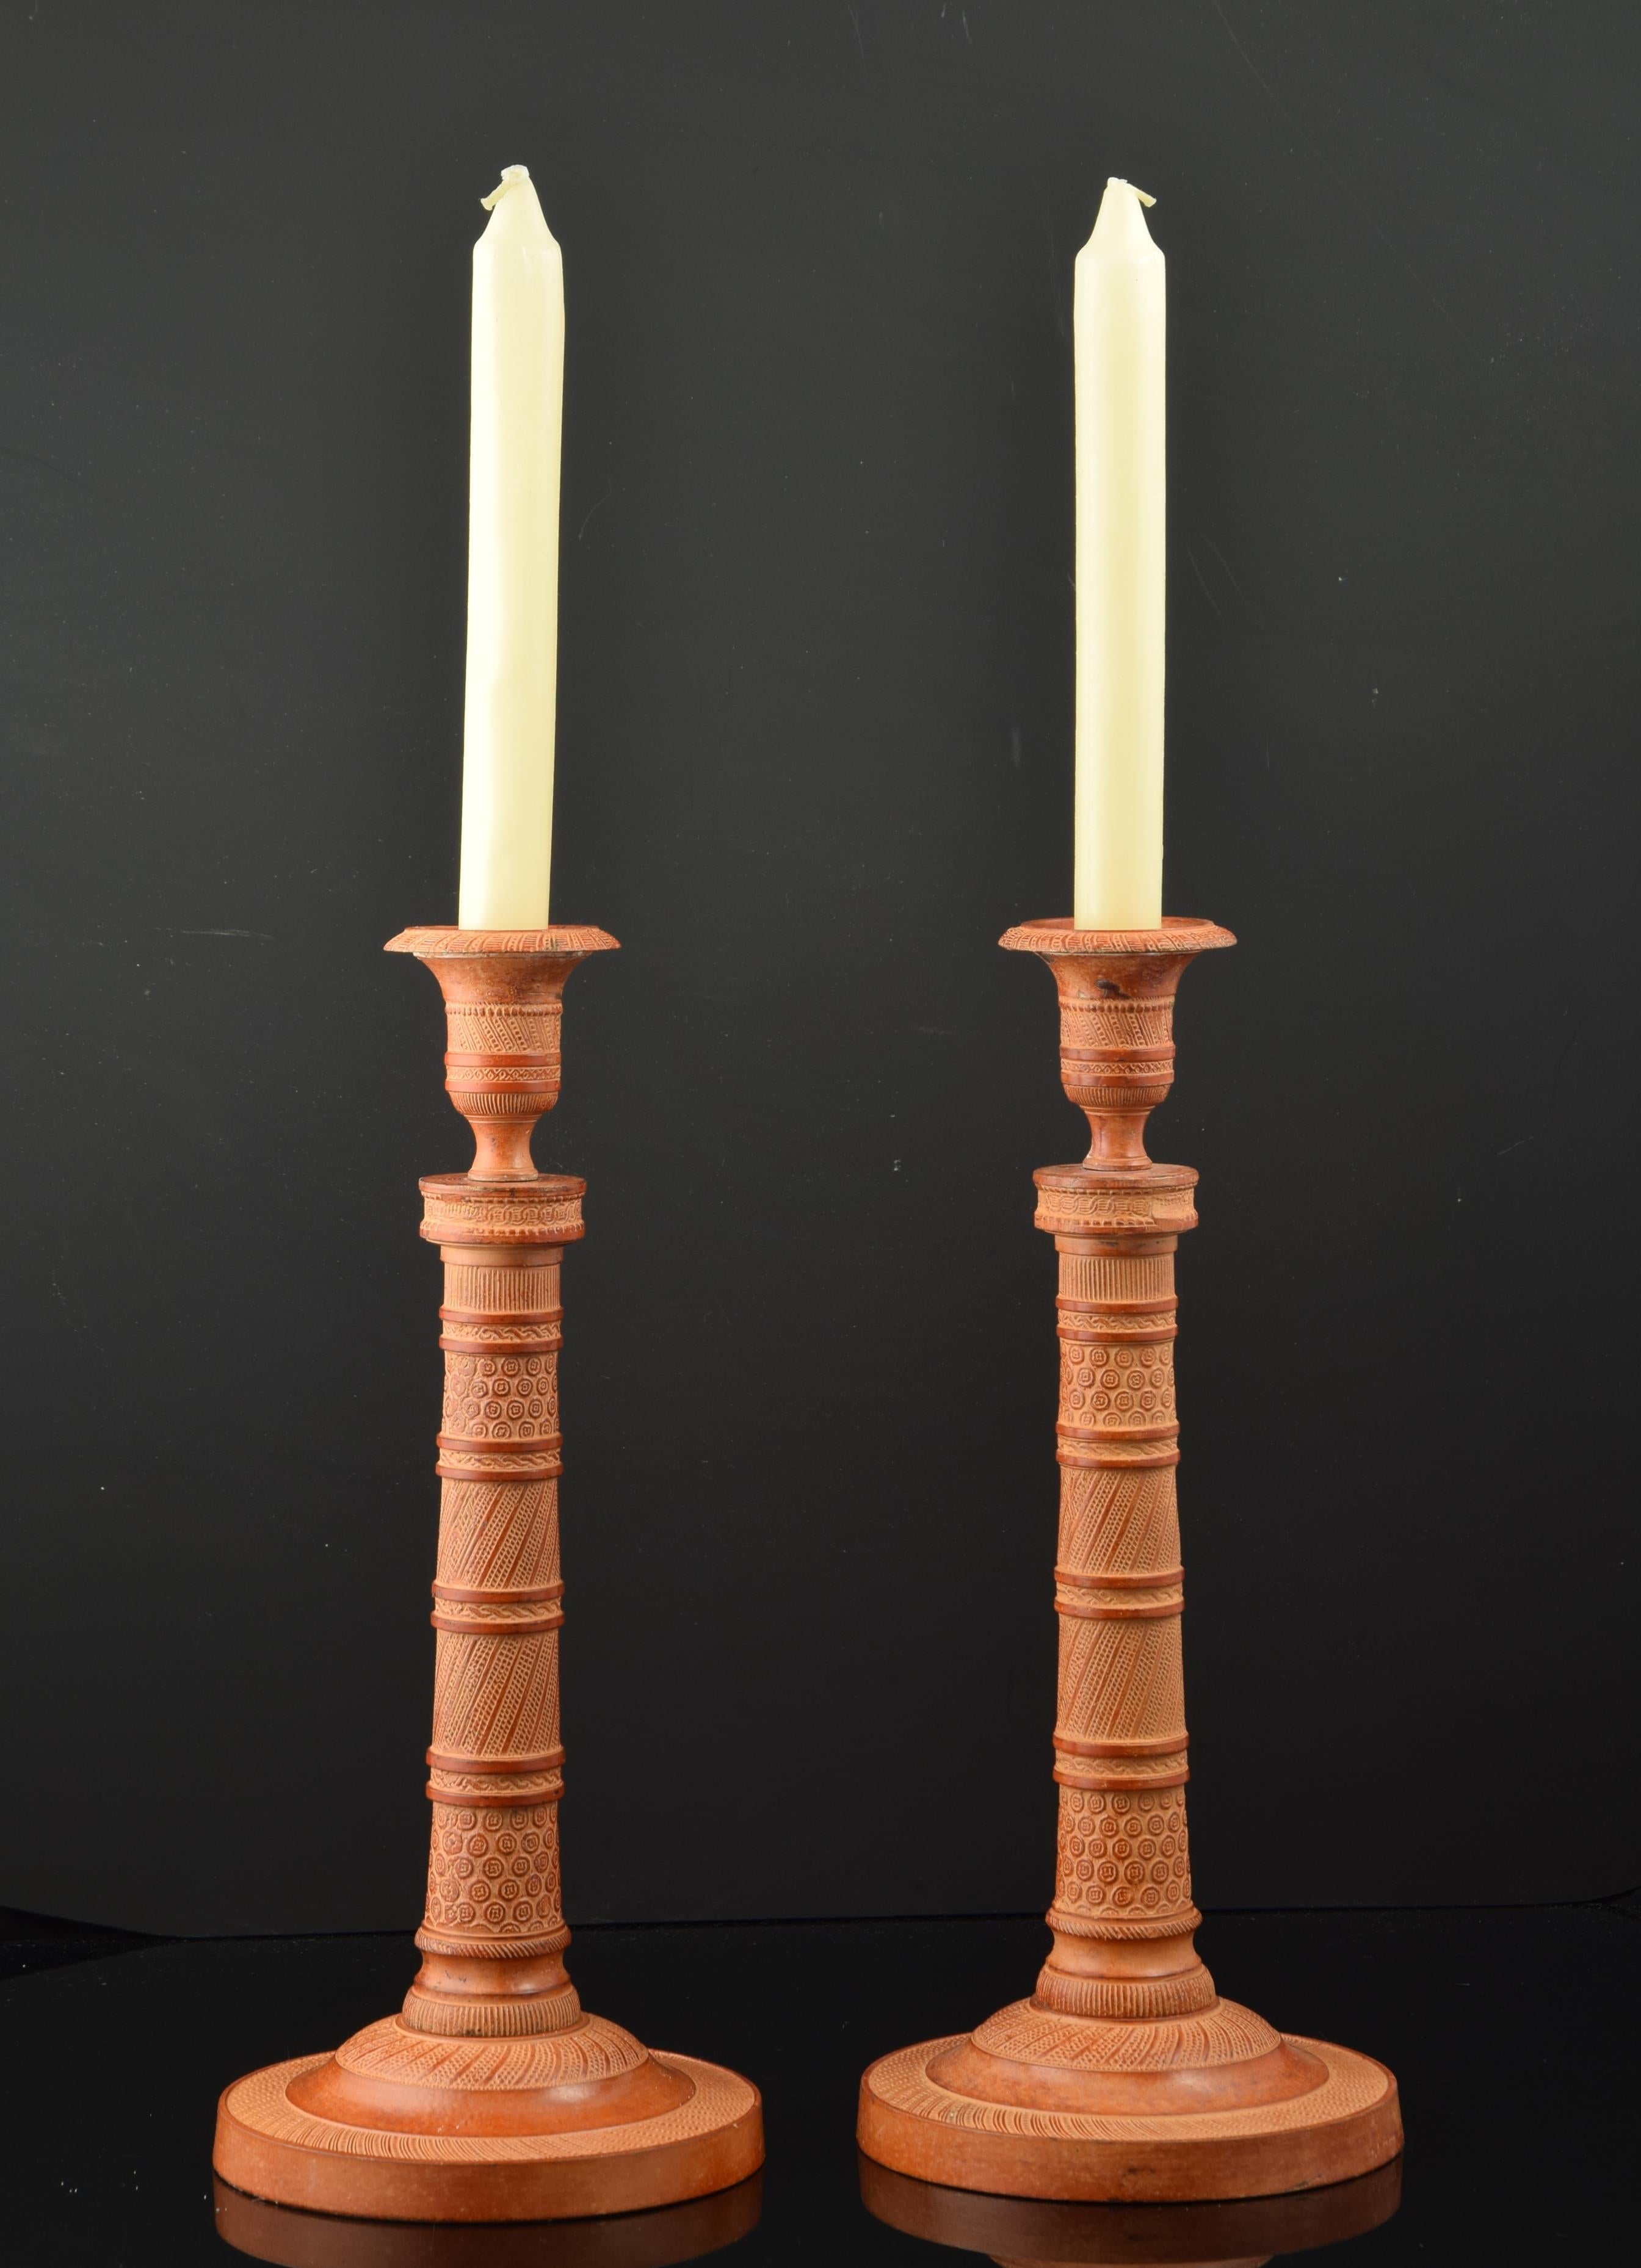 Paar Kerzenständer aus patinierter Bronze.
Einflammiger Kerzenhalter mit rundem Sockel, zylindrischem Korpus und Kerzenbehälter in Form einer klassischen Vase. Die gesamte Oberfläche ist mit Leisten verziert, die durch gerade Bänder mit